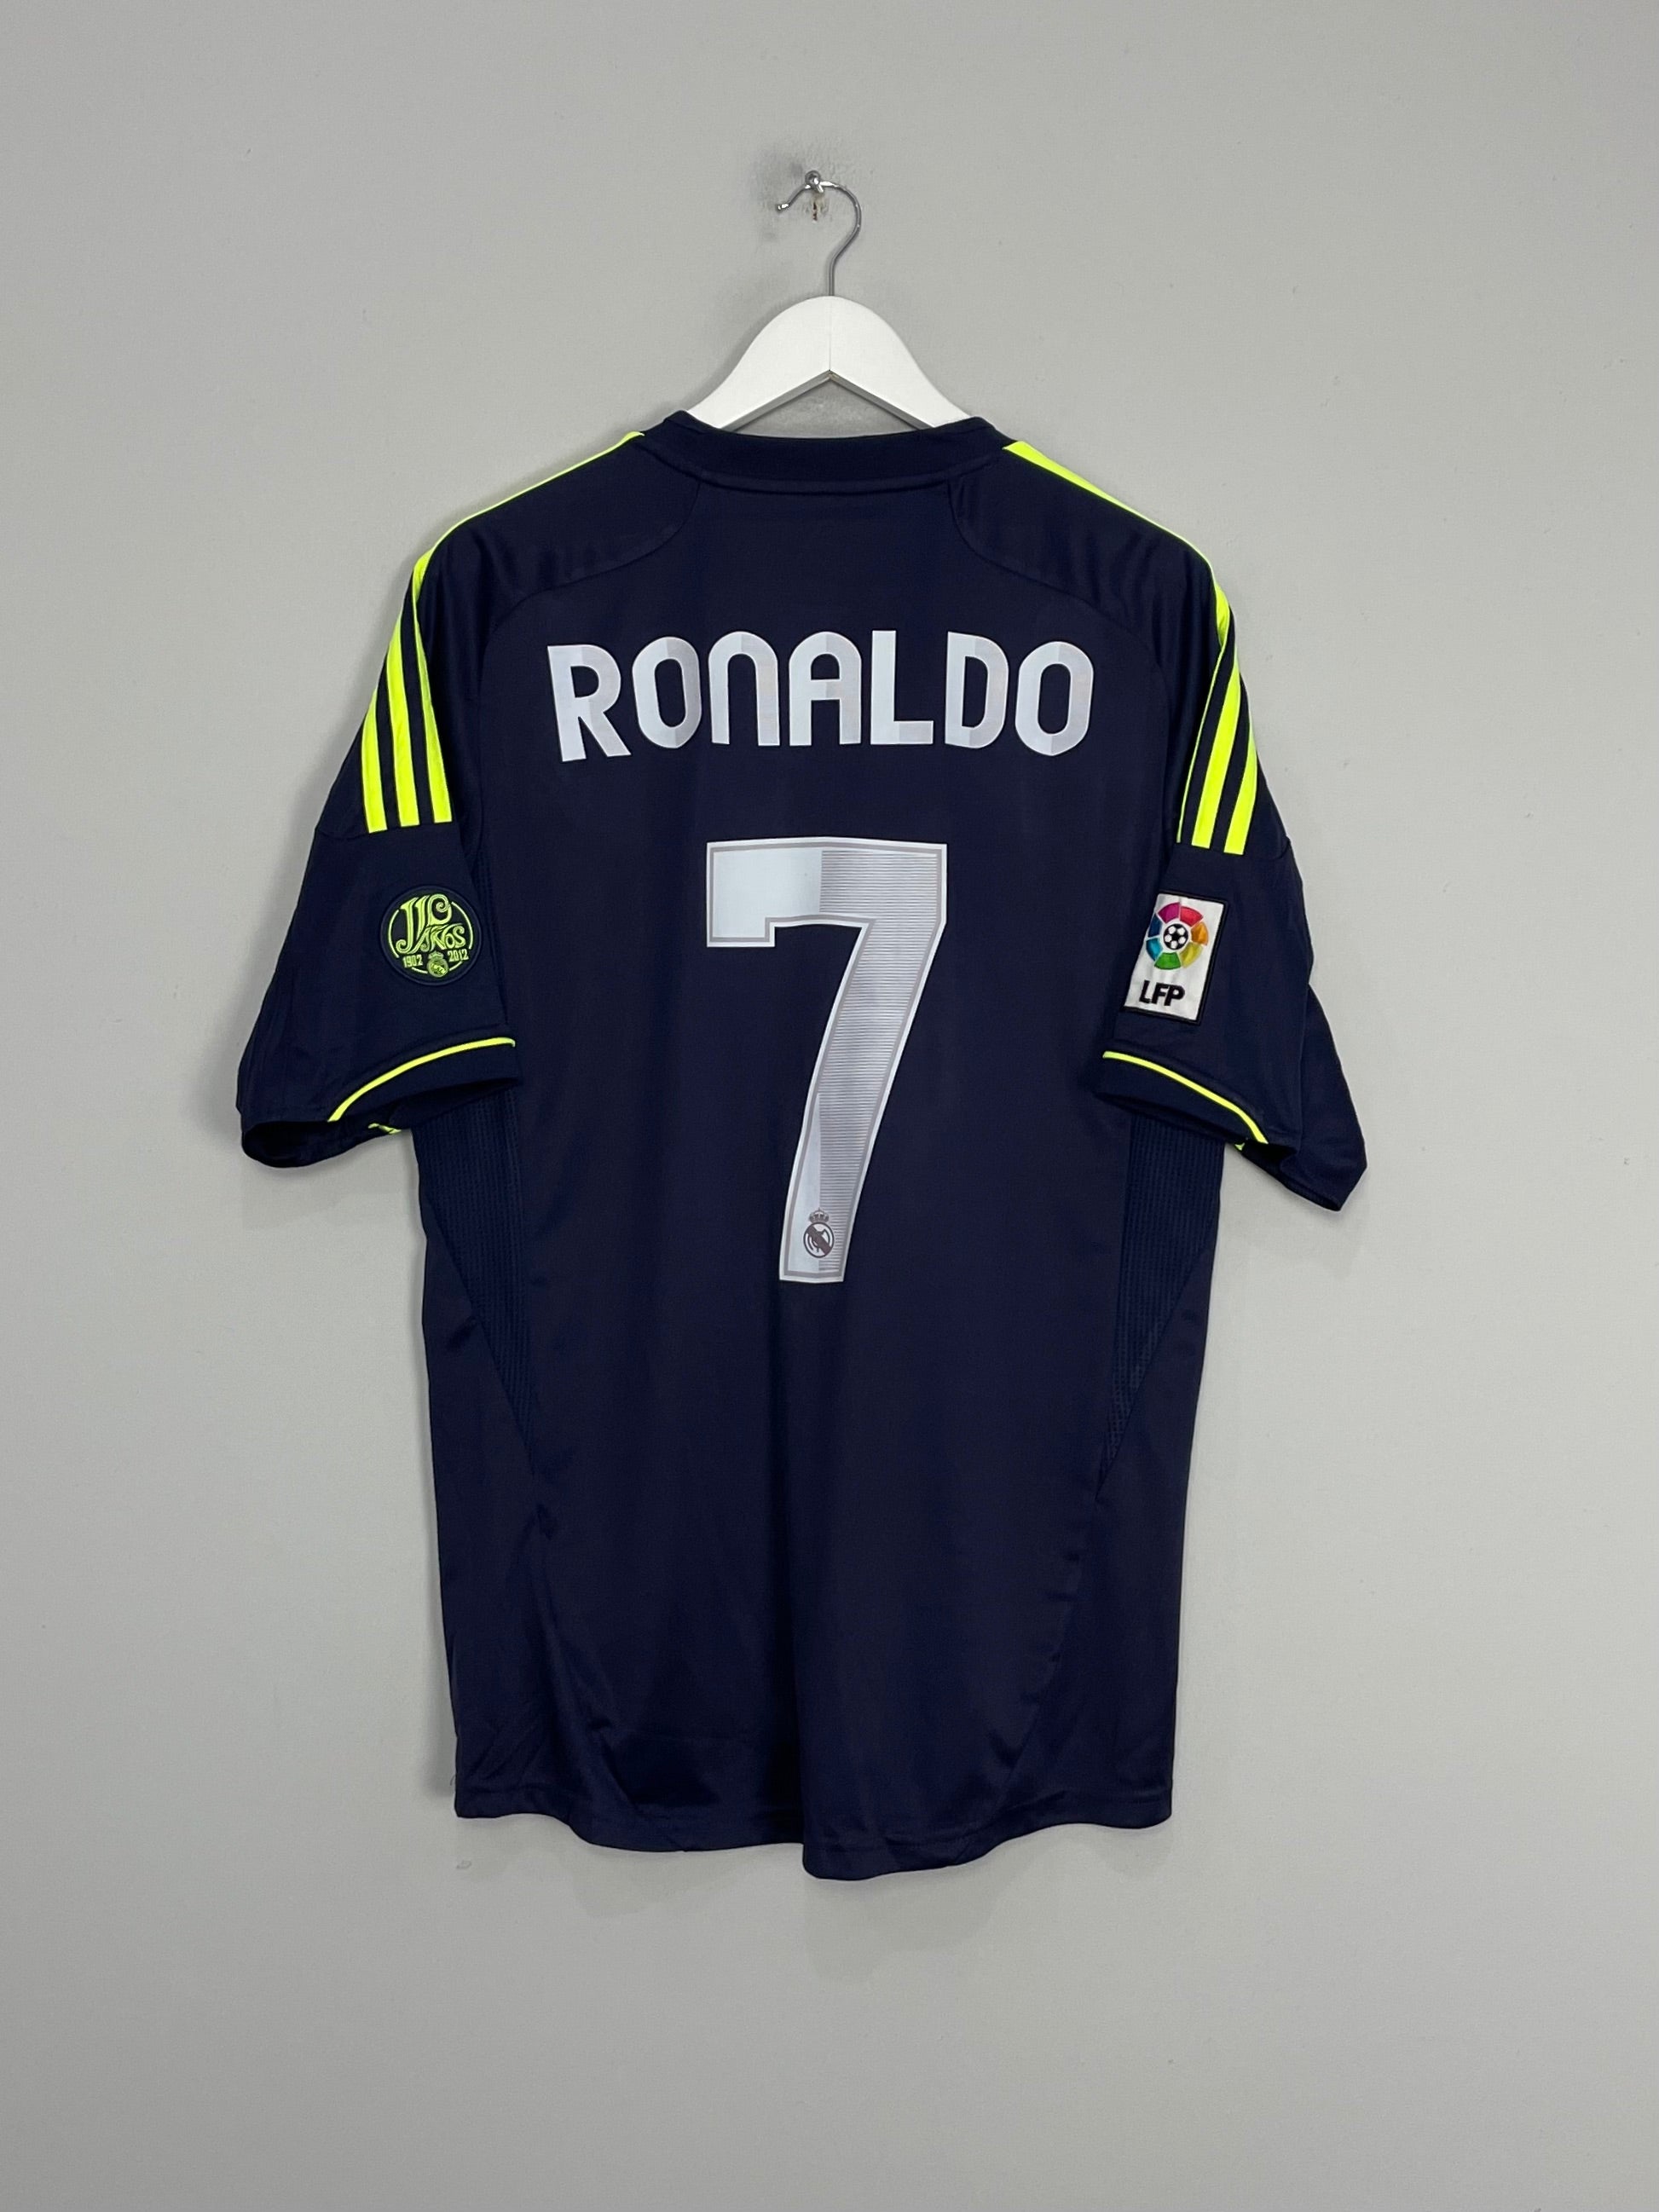 Cult Kits, Buy Cristiano Ronaldo Football Shirts